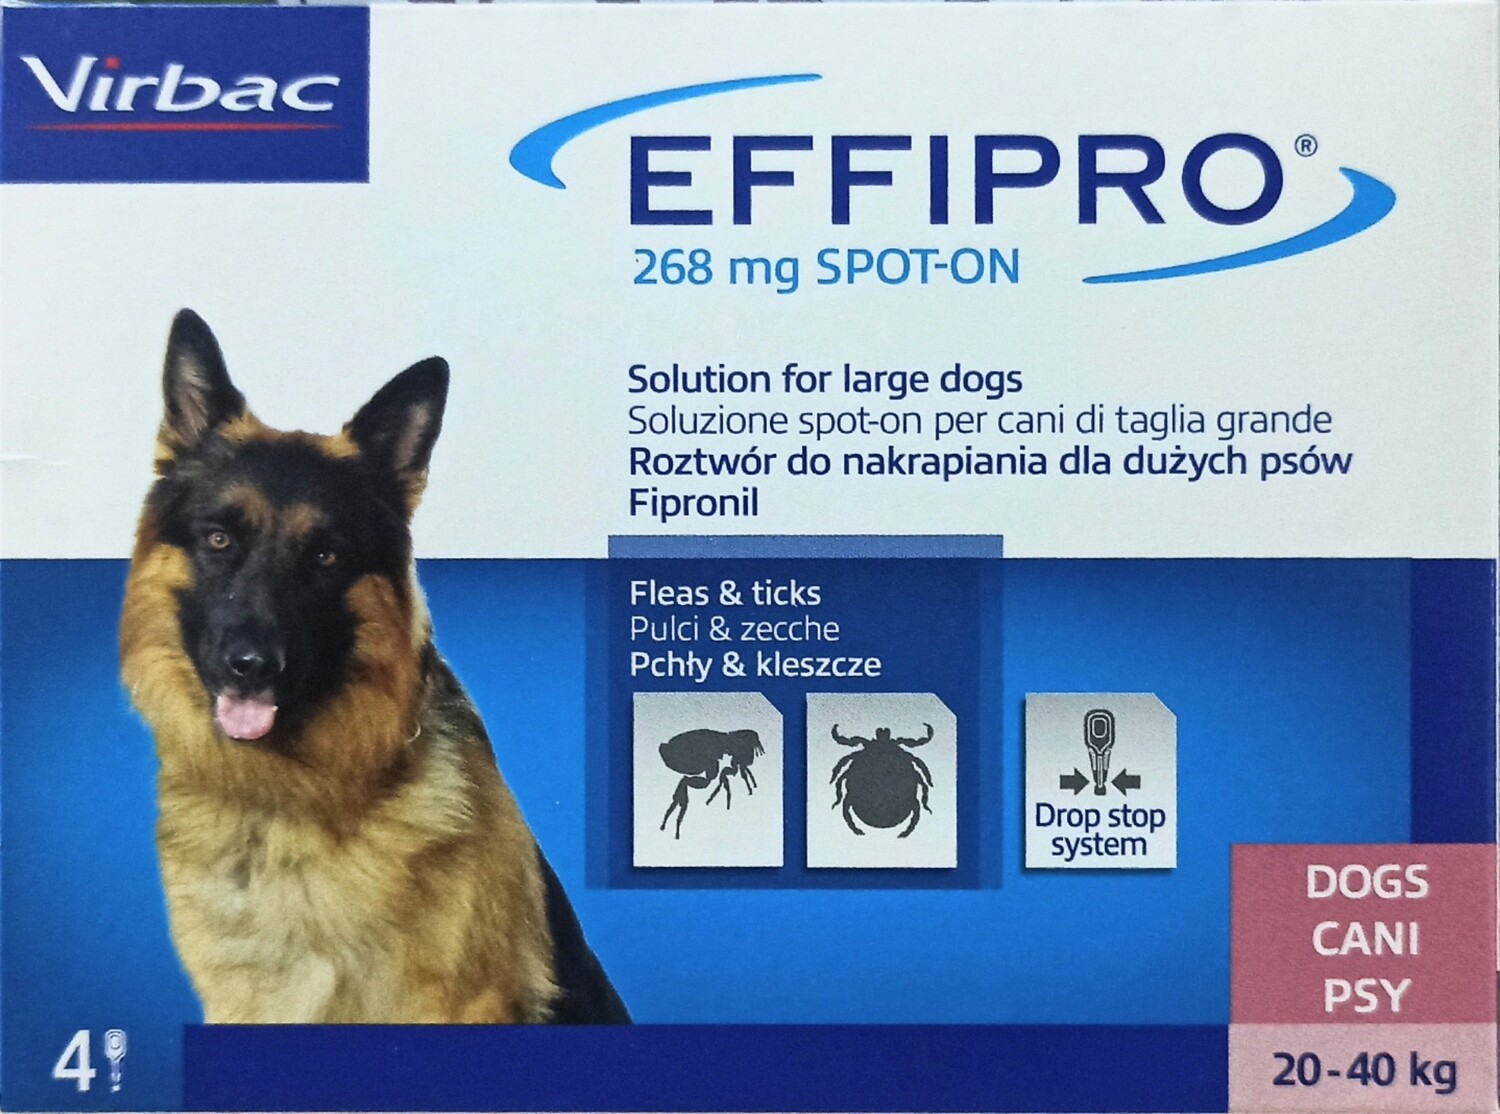 Effipro Duo Antiparassitari - 4 Pip. Spot-On Per Cani di Kg 40 - 60